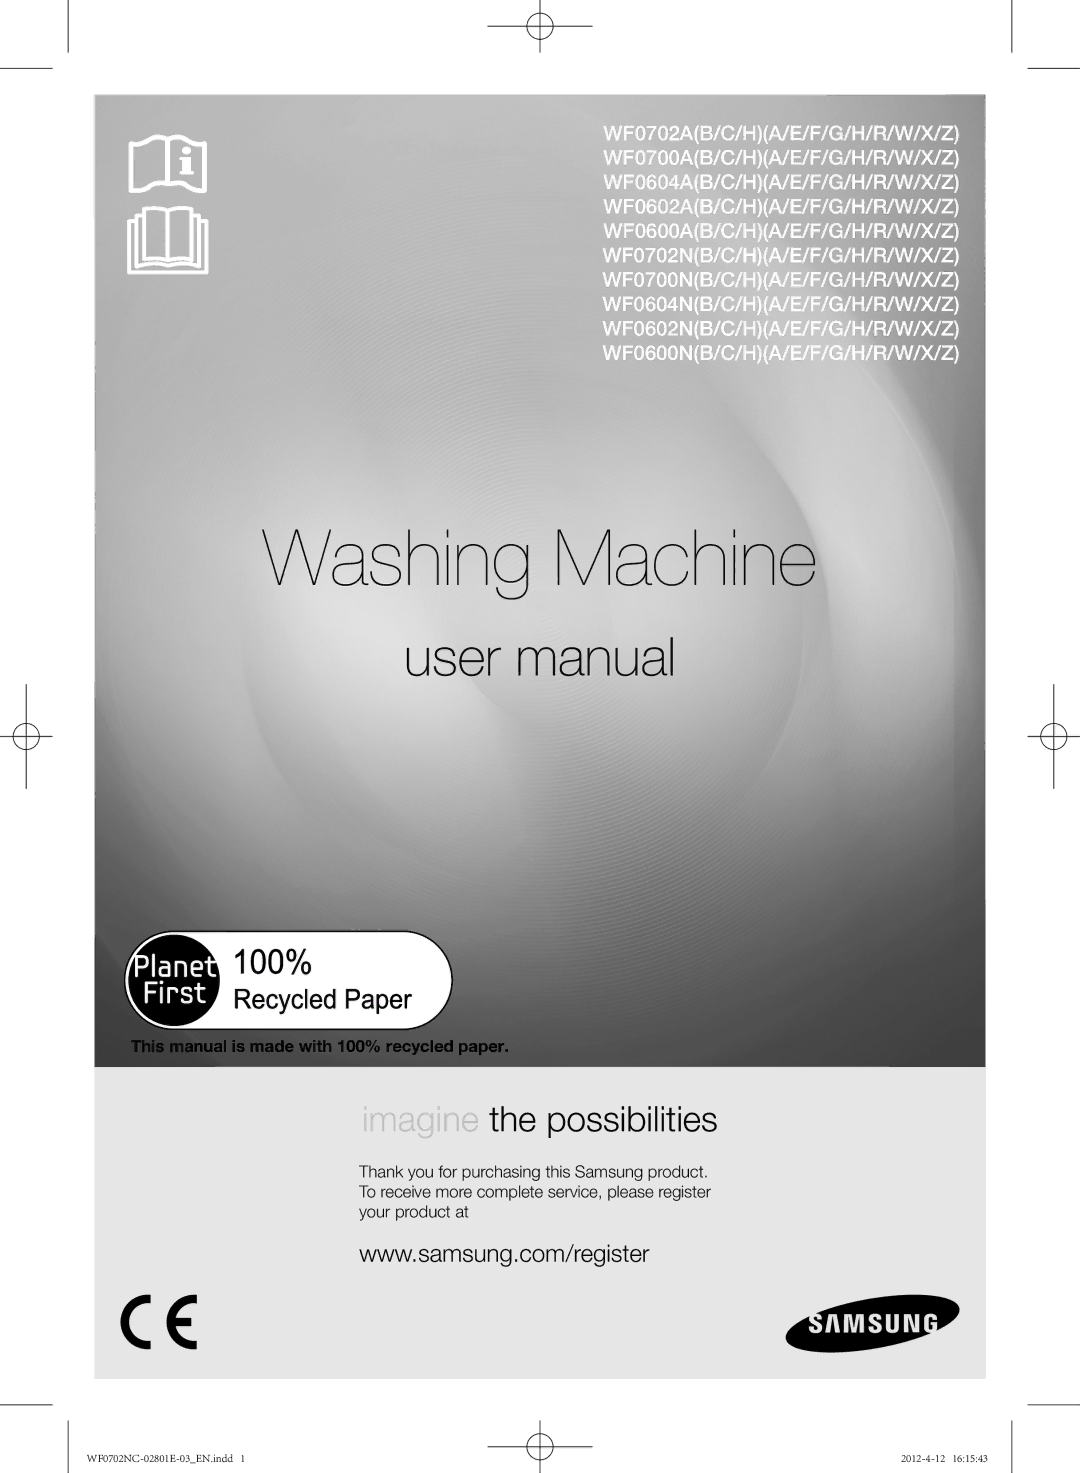 Samsung WF0602NCW/XEH, WF0702NCE/XEH, WF0702NCW/XEH, WF0600NCE/XEH, WF0700NCE/XEH manual Washing Machine 